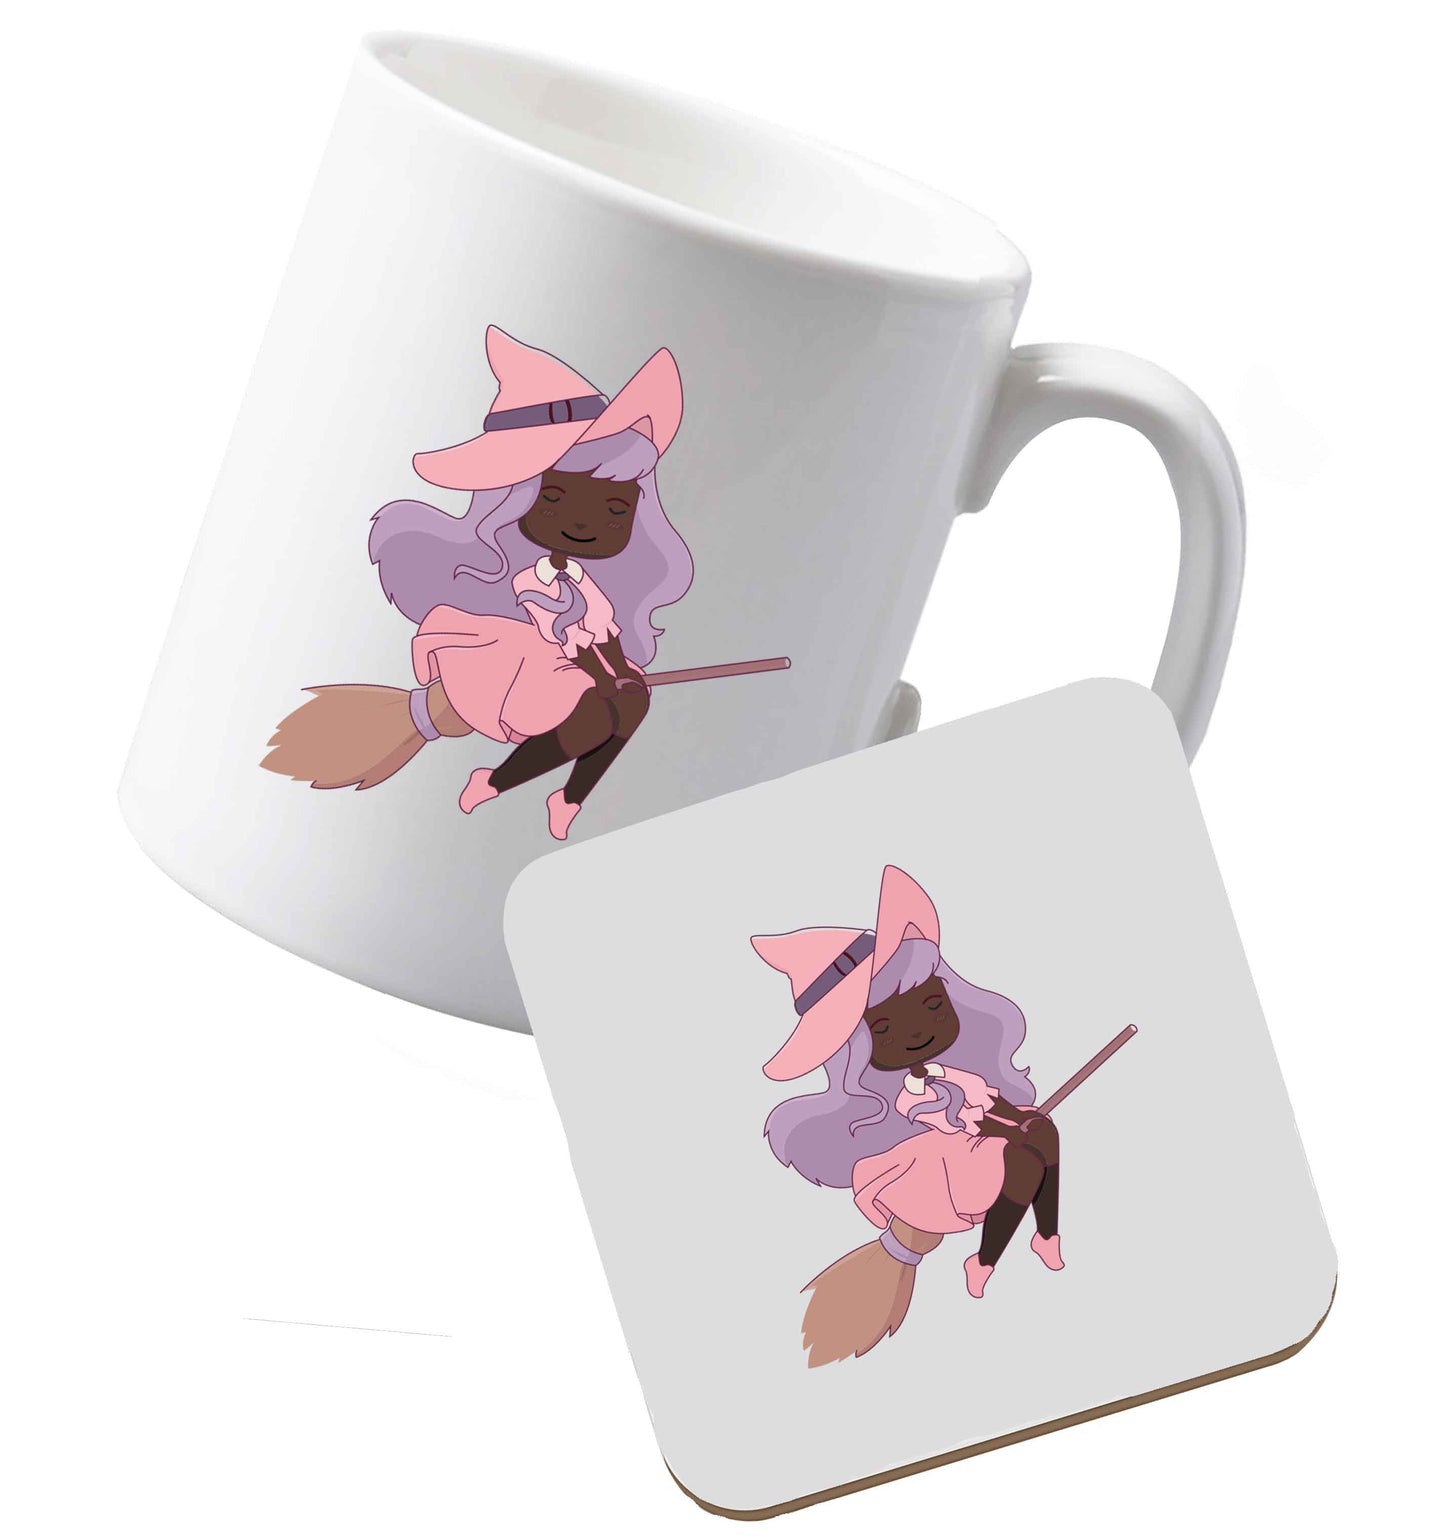 10 oz Ceramic mug and coaster Witch illustration Kit both sides